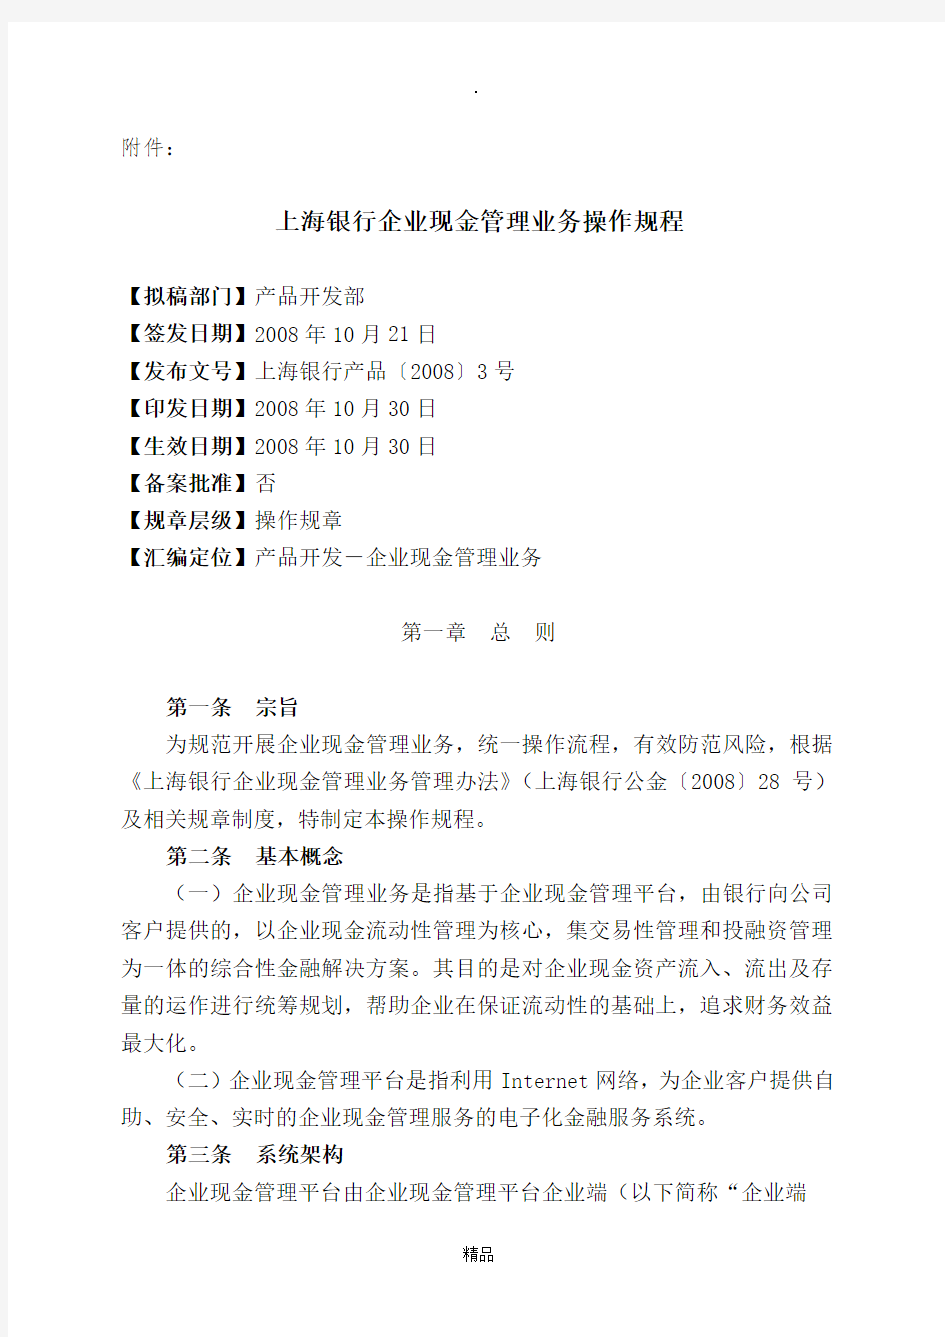 上海银行企业现金管理业务操作规程